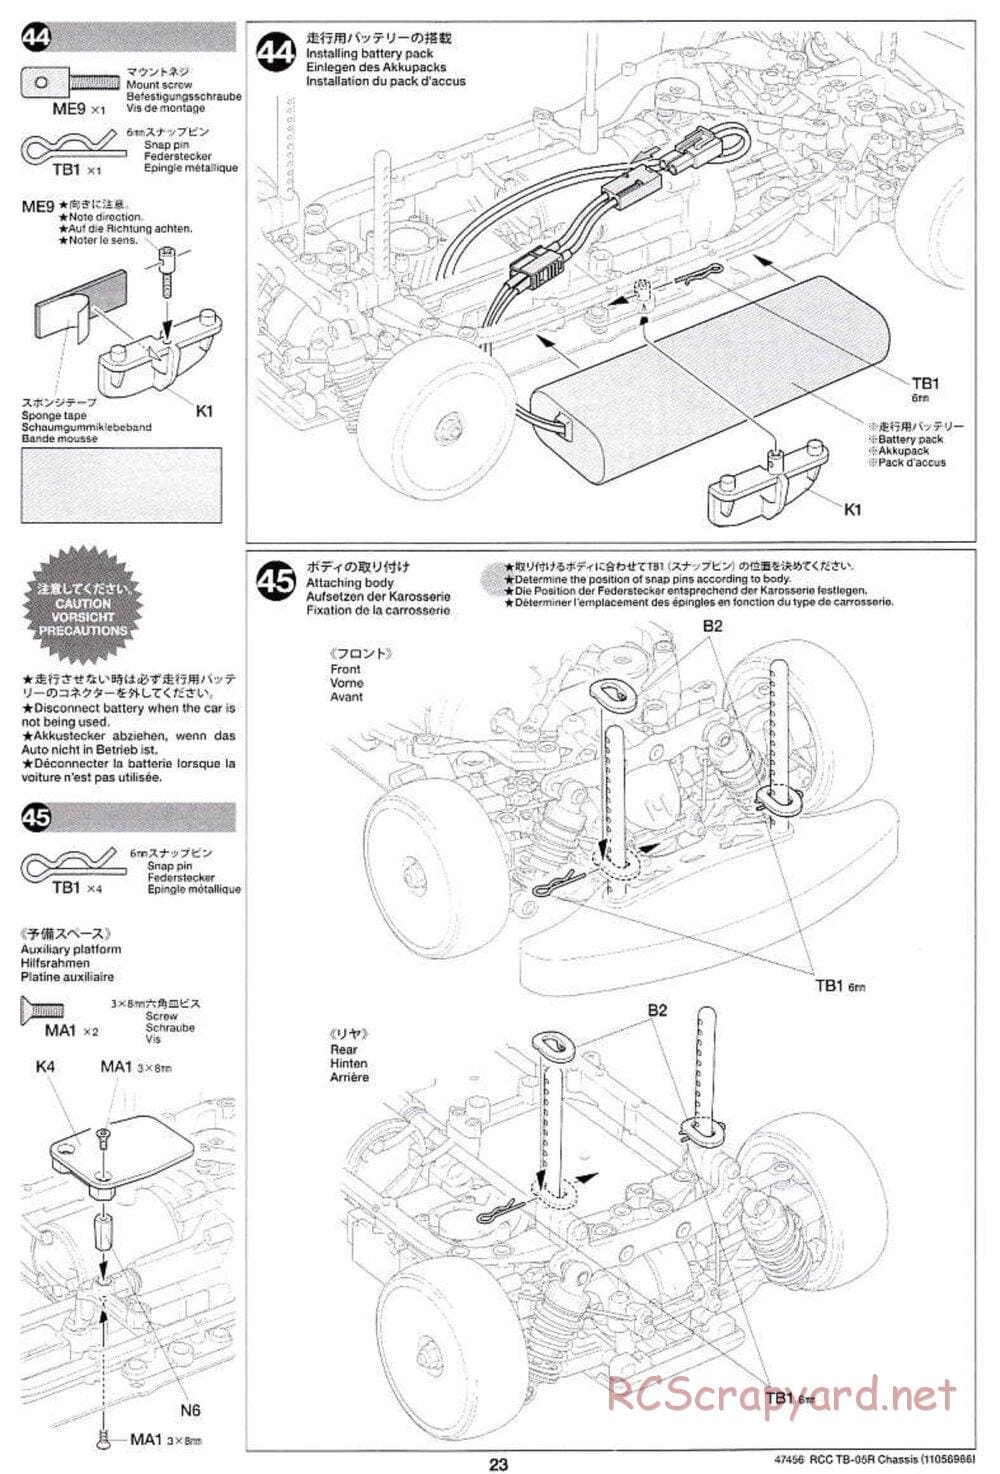 Tamiya - TB-05R Chassis - Manual - Page 23